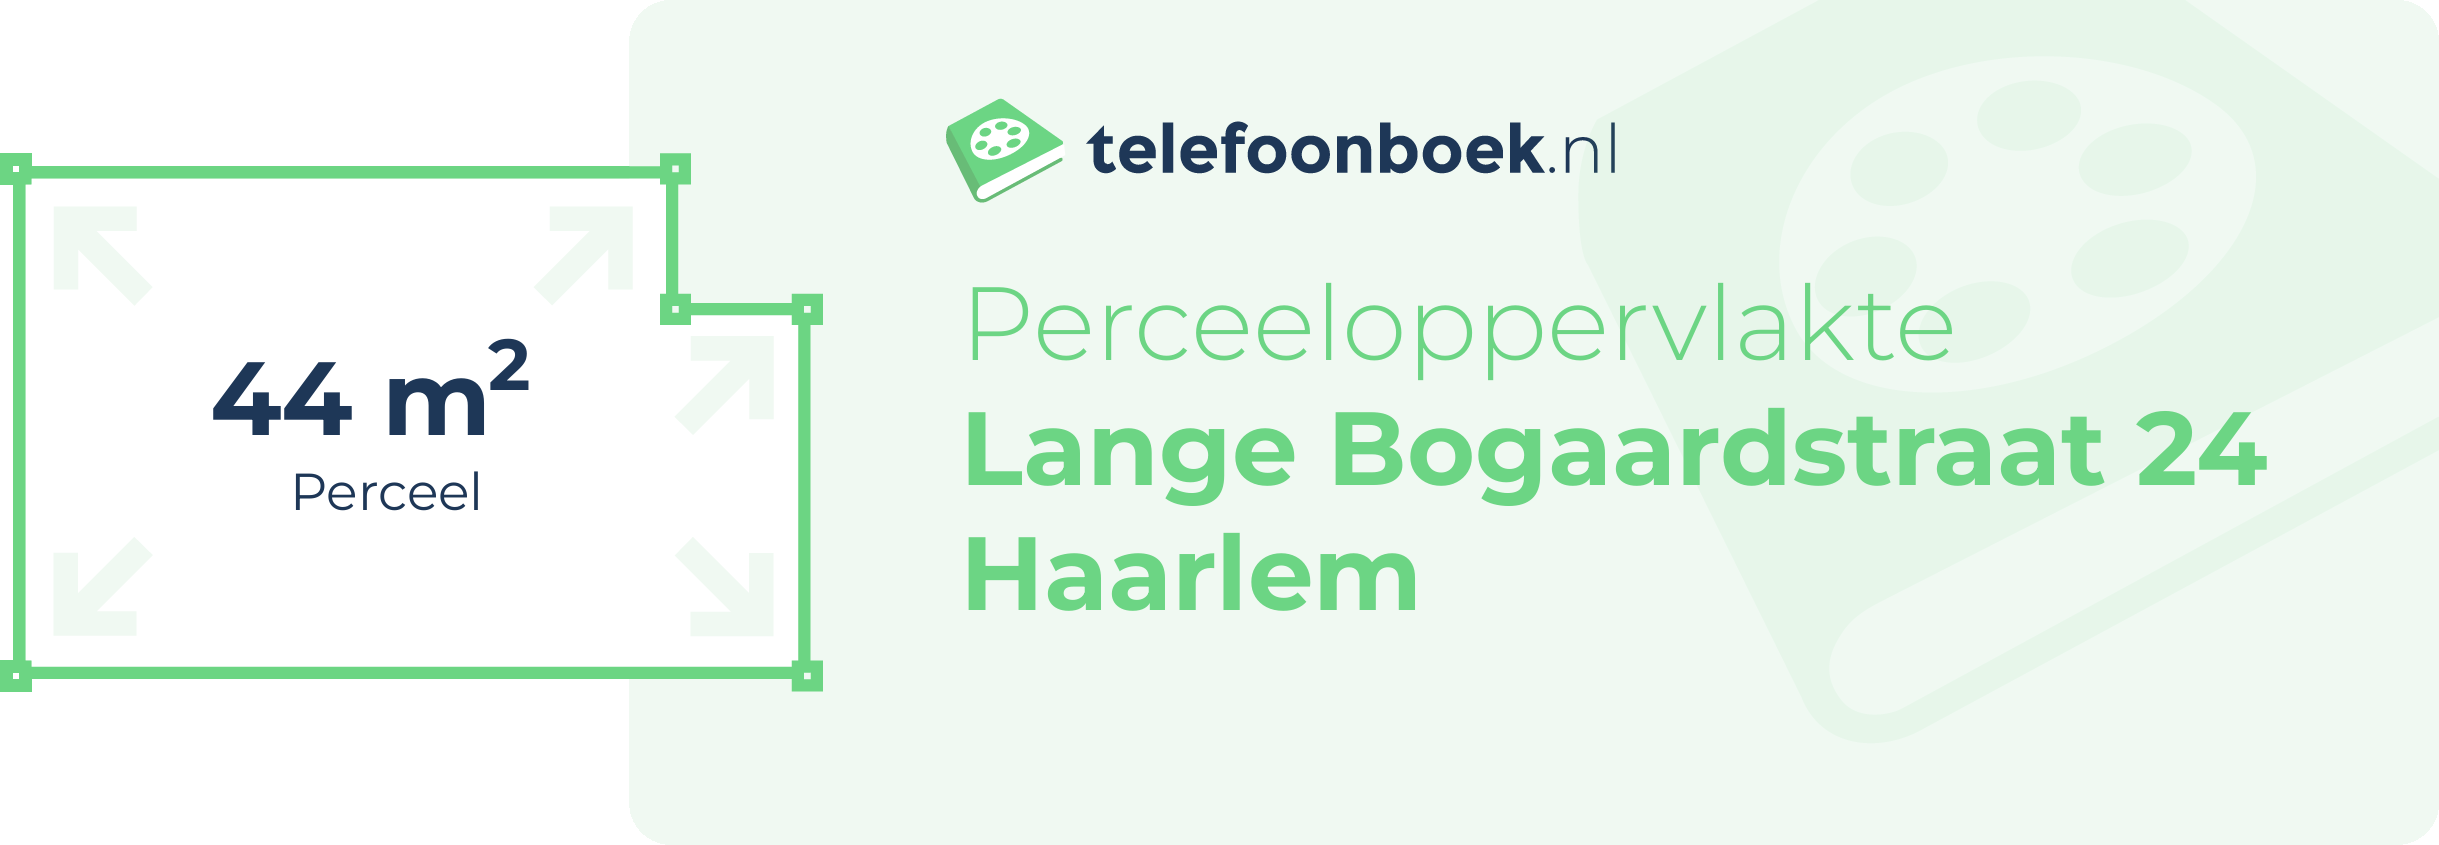 Perceeloppervlakte Lange Bogaardstraat 24 Haarlem